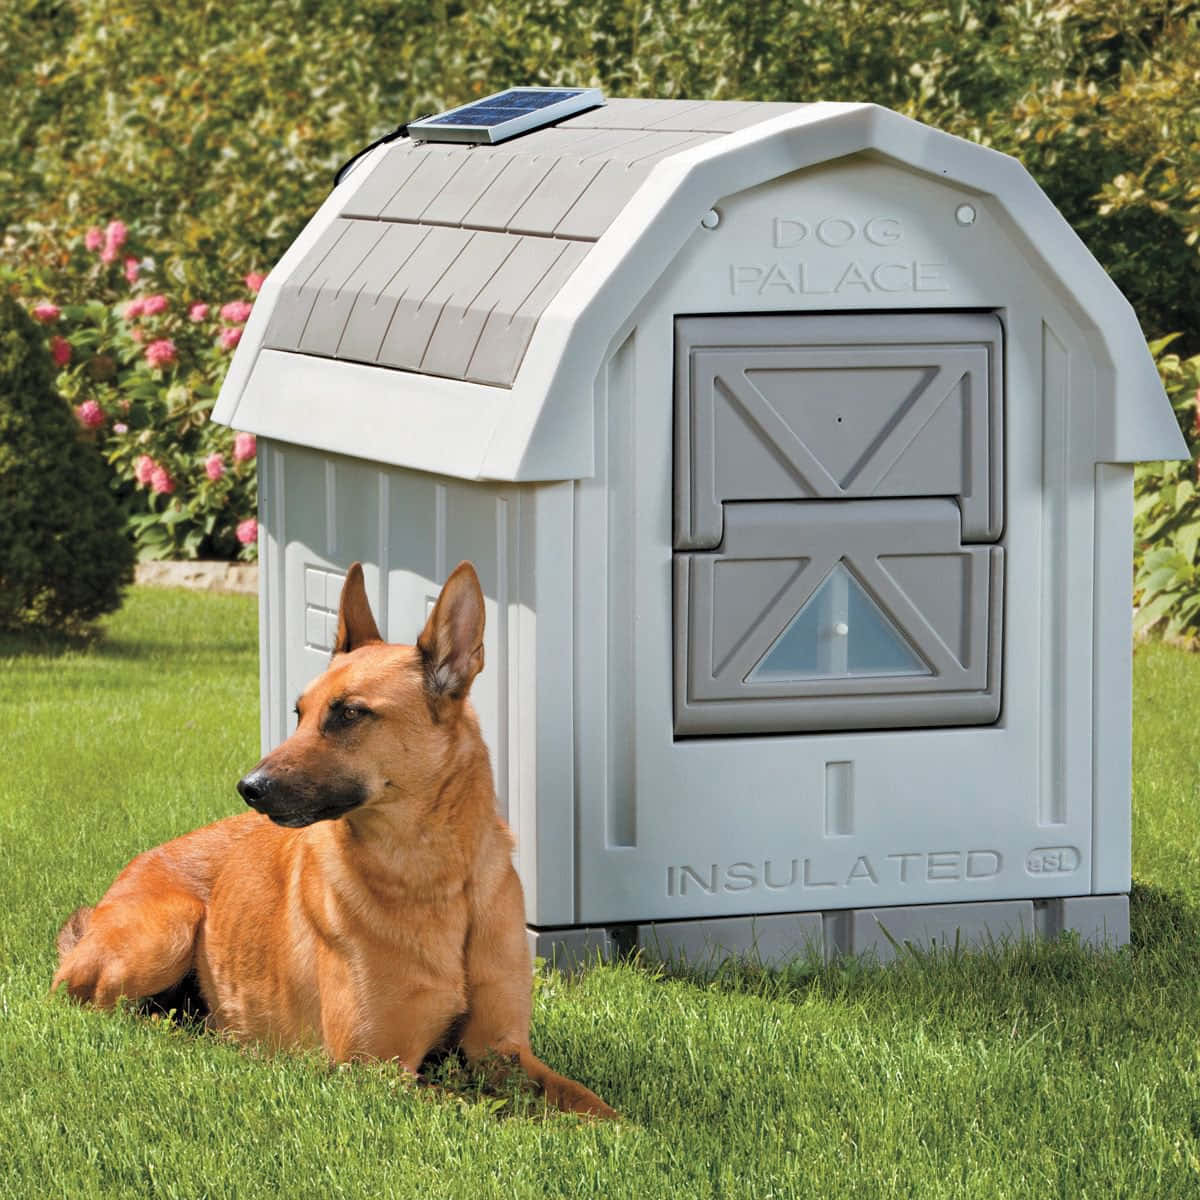 New dog house. Будка для собаки. Креативные будки для собак. Собака с конурой. Большая будка для собаки.